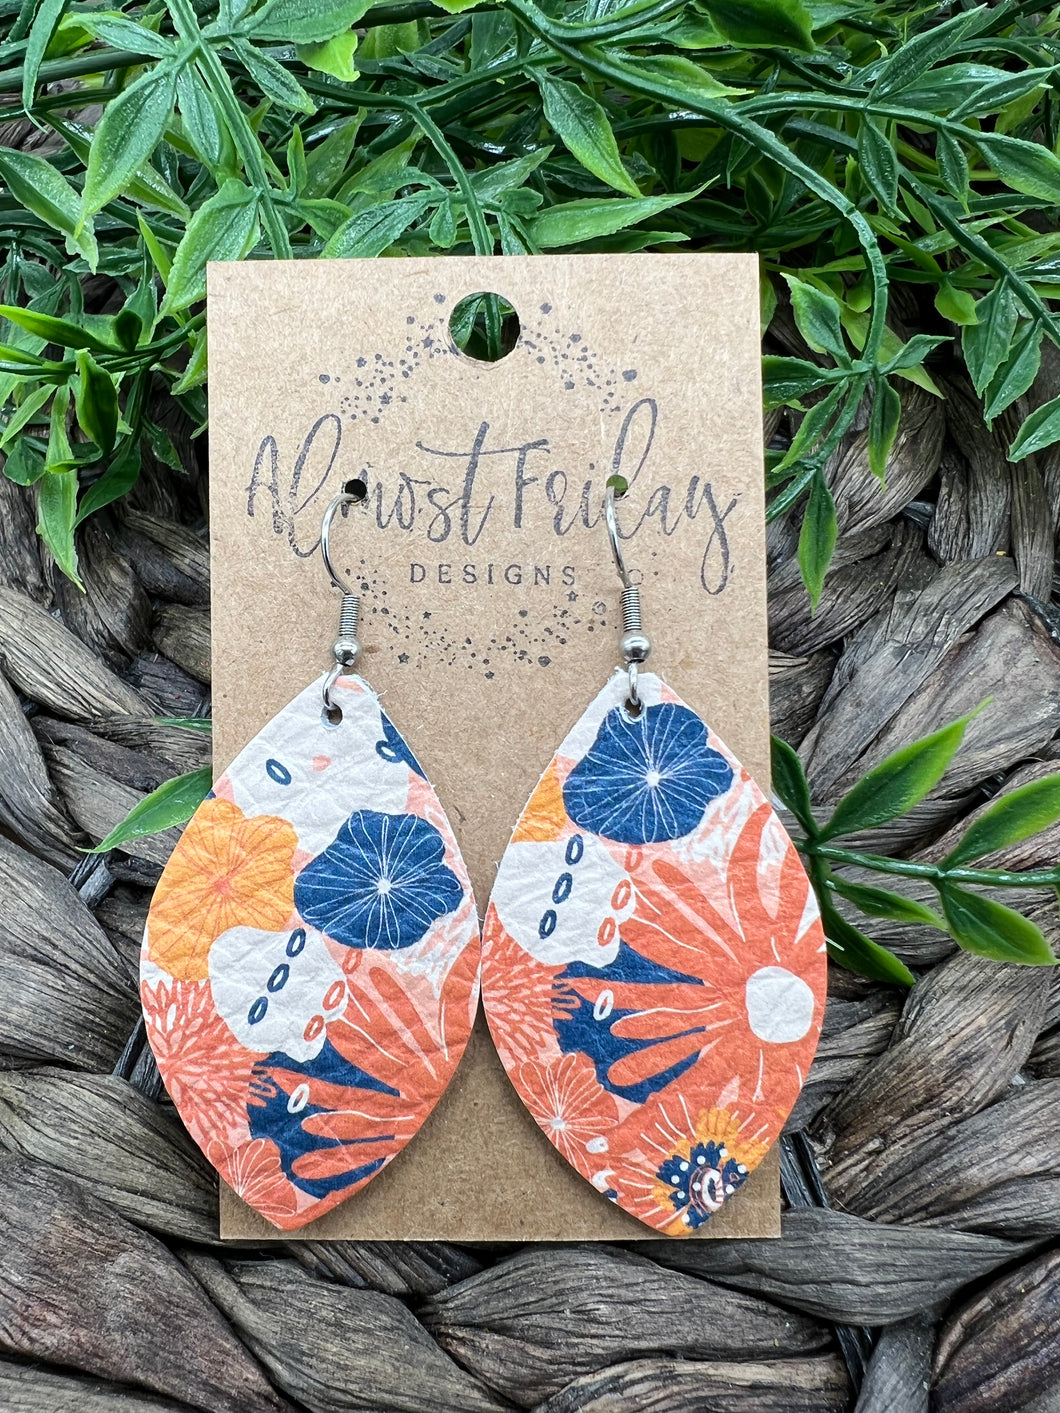 Genuine Leather Earrings - Orange Flowers - Peach - Blue - Fall Earrings - Fall Flowers - Leaf Cut - Cut Out Earrings - Statement Earrings